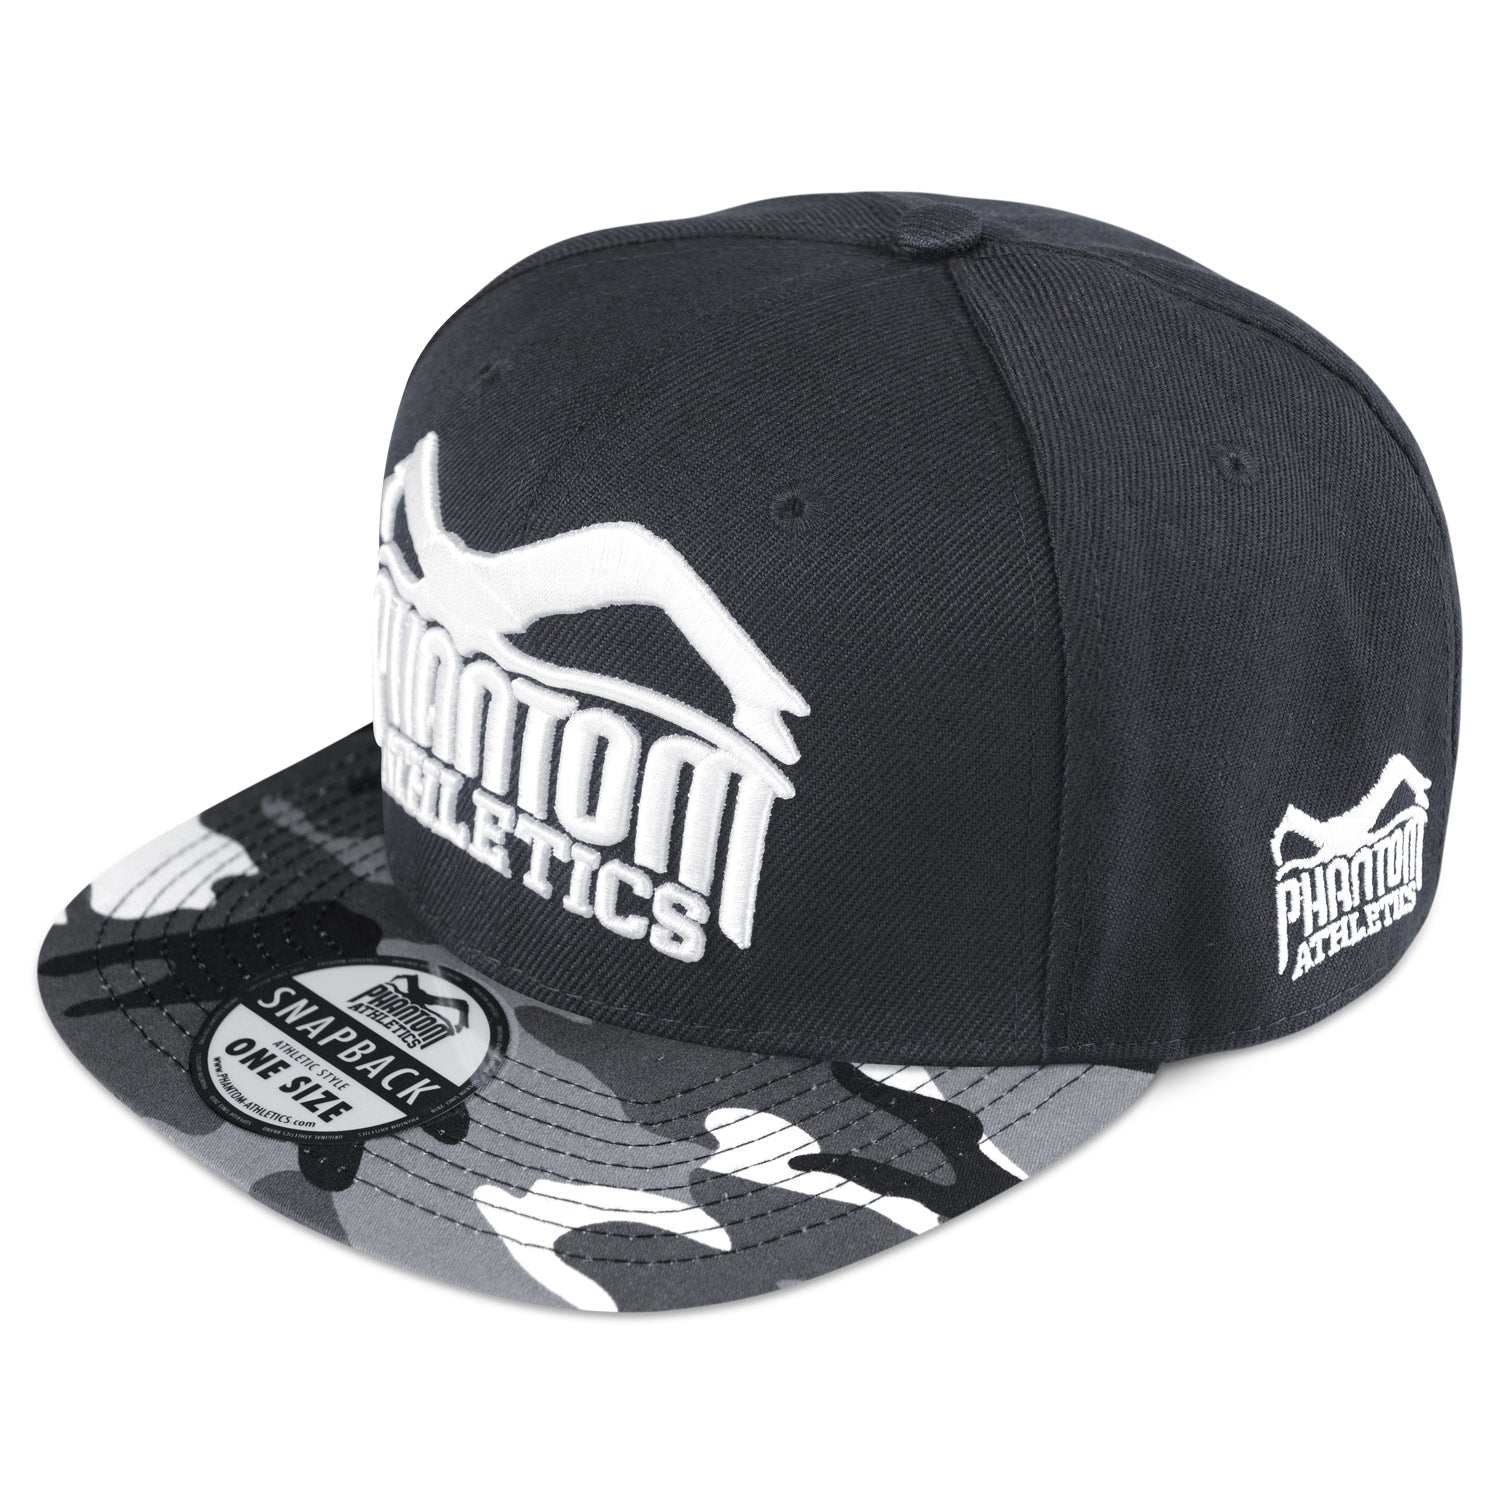 Phantom Cap für alle Kampfsportler und Fans. Schwarze Kappe mit geradem Schirm in Urban Camo und hochwertig gesticktem Phantom Athletics Logo auf der Vorderseite. 